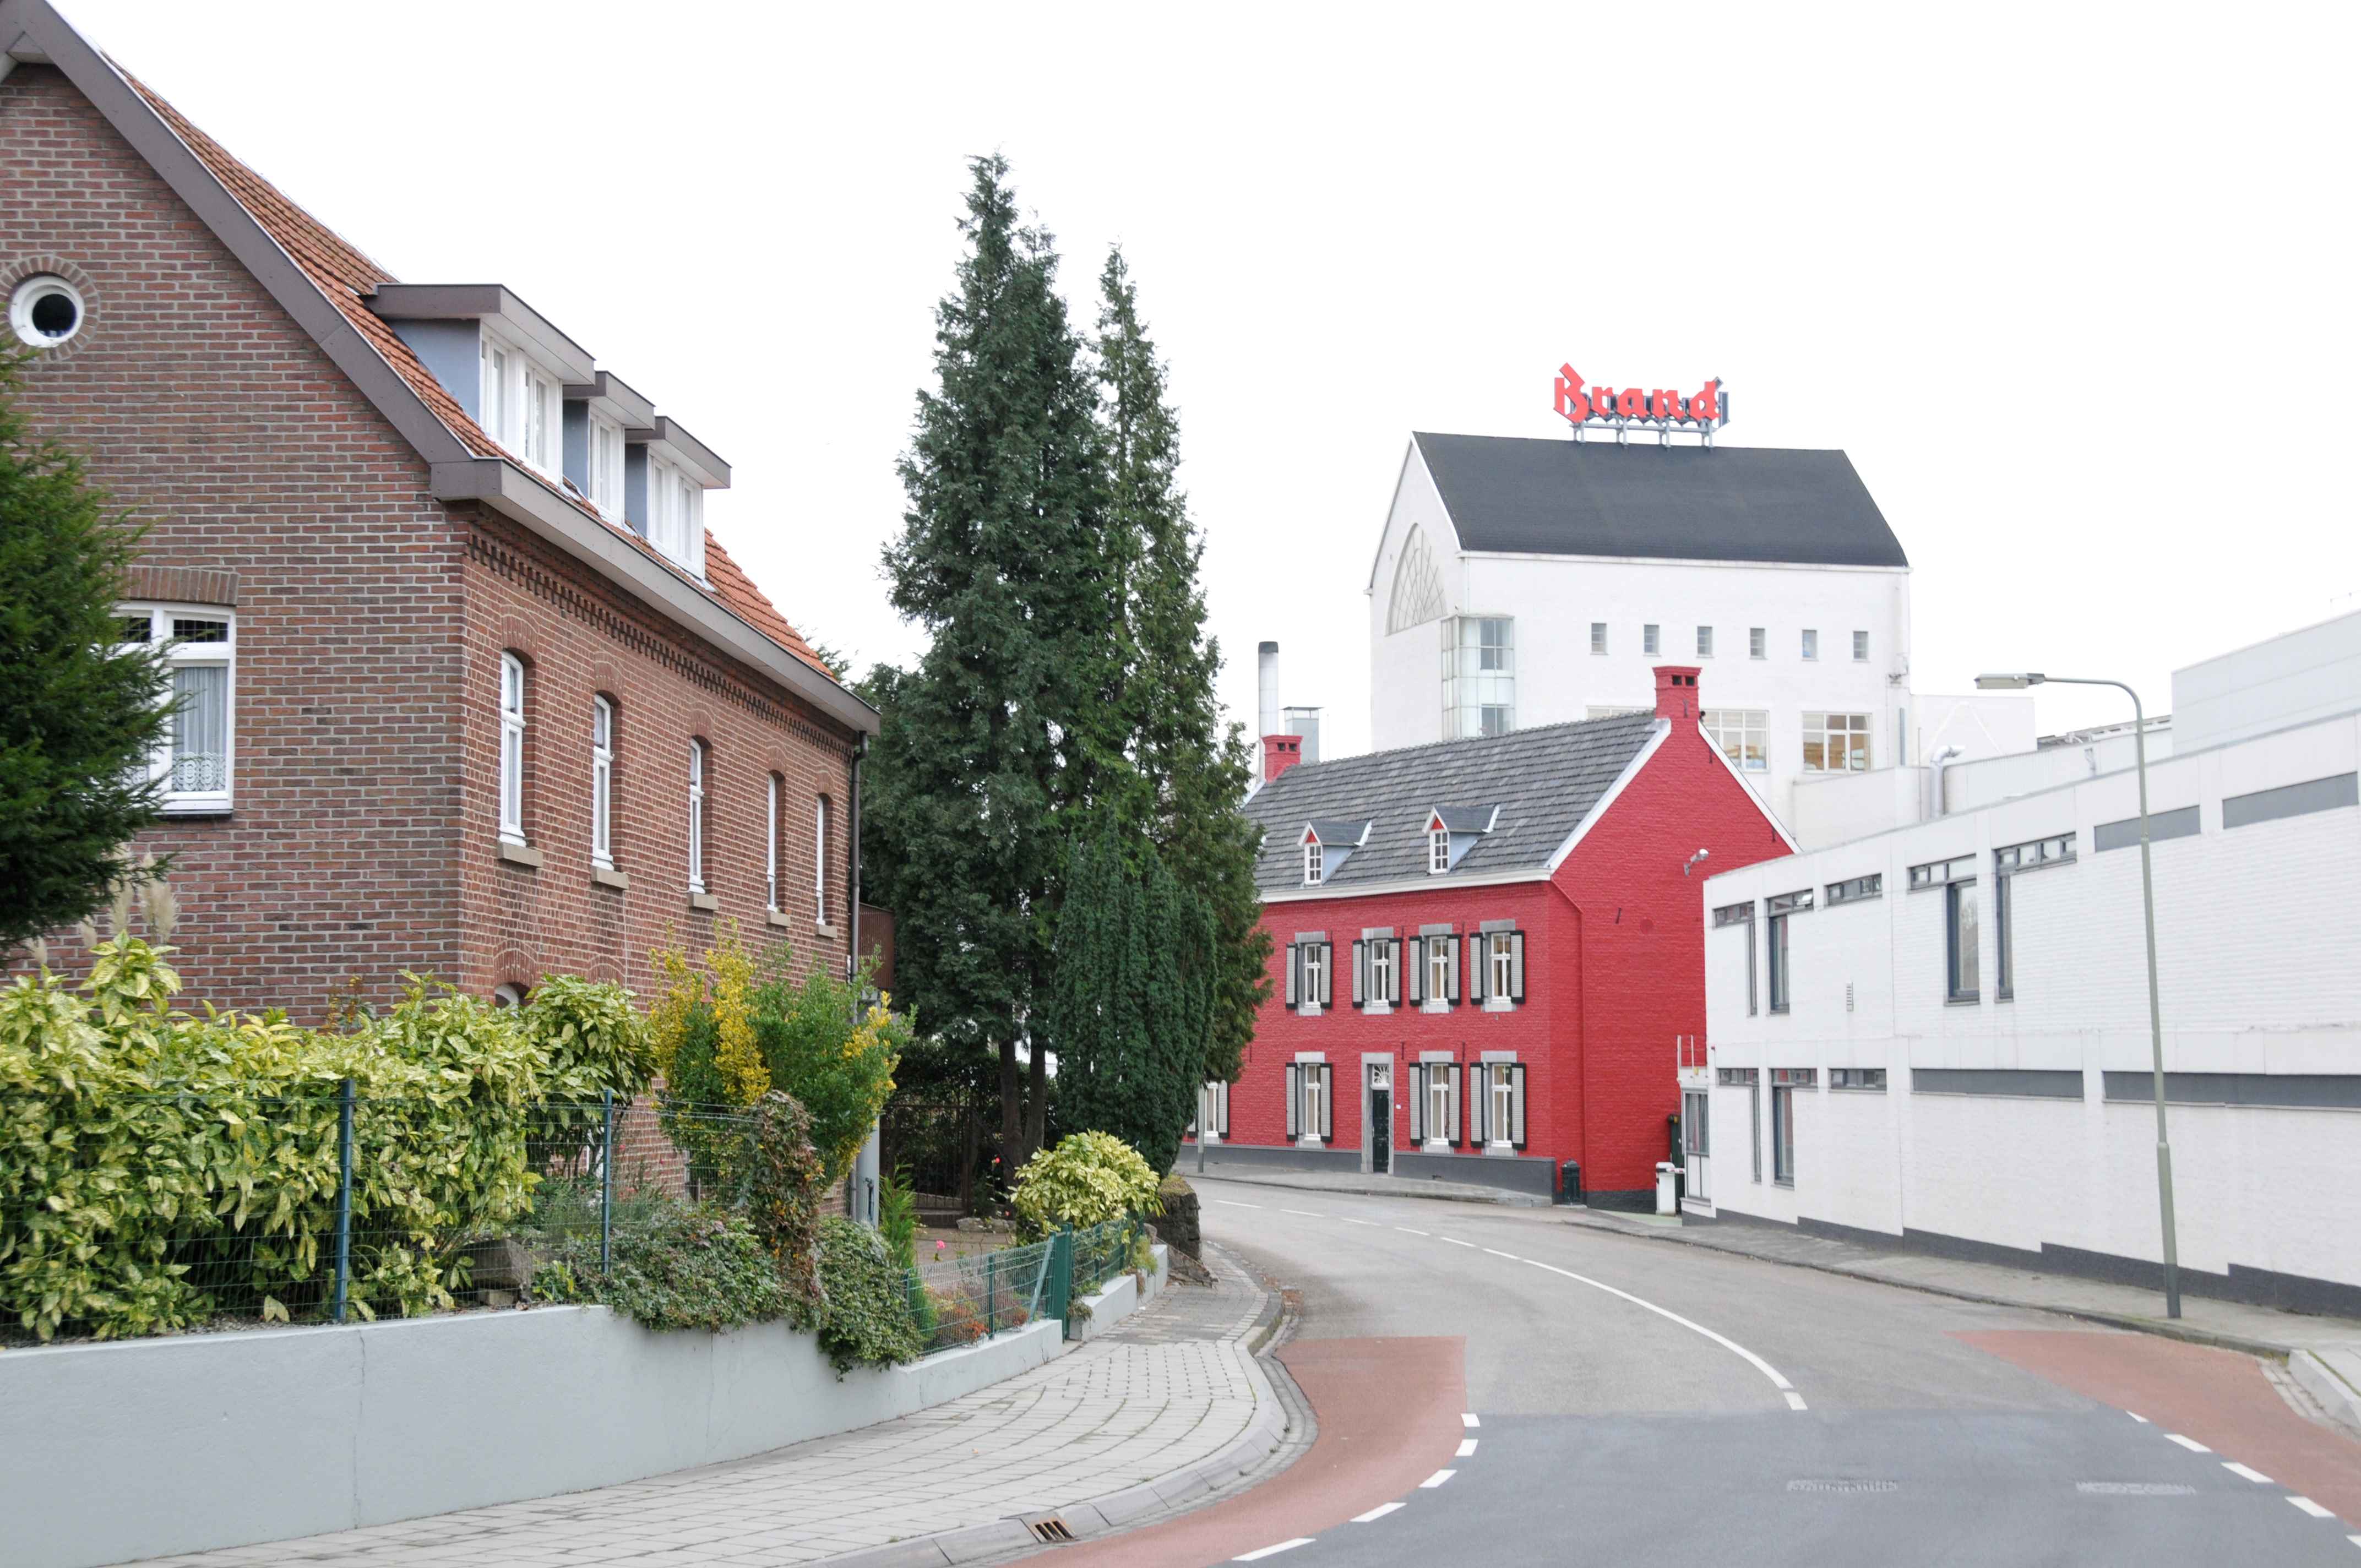 Brouwwereld: Brand verlegt koers na ingrijpend besluit van Heineken